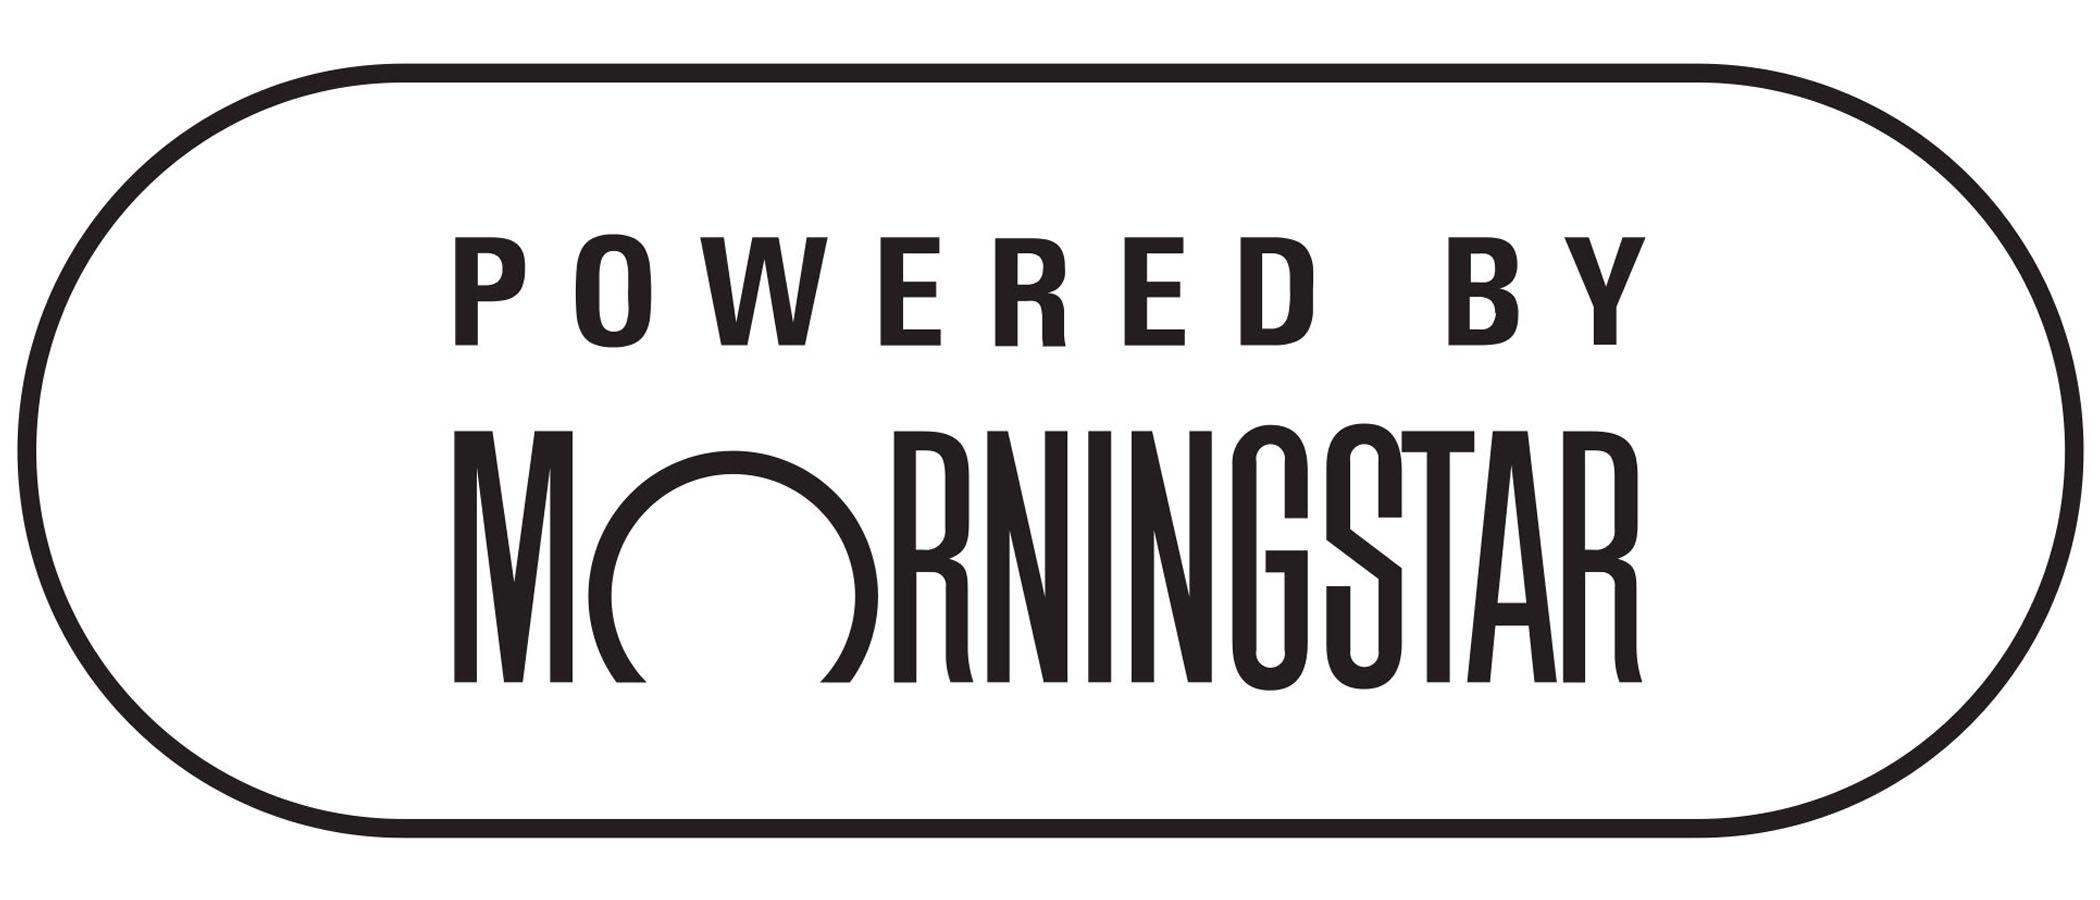 Morningstar Logo - Powered by Morningstar logo white background